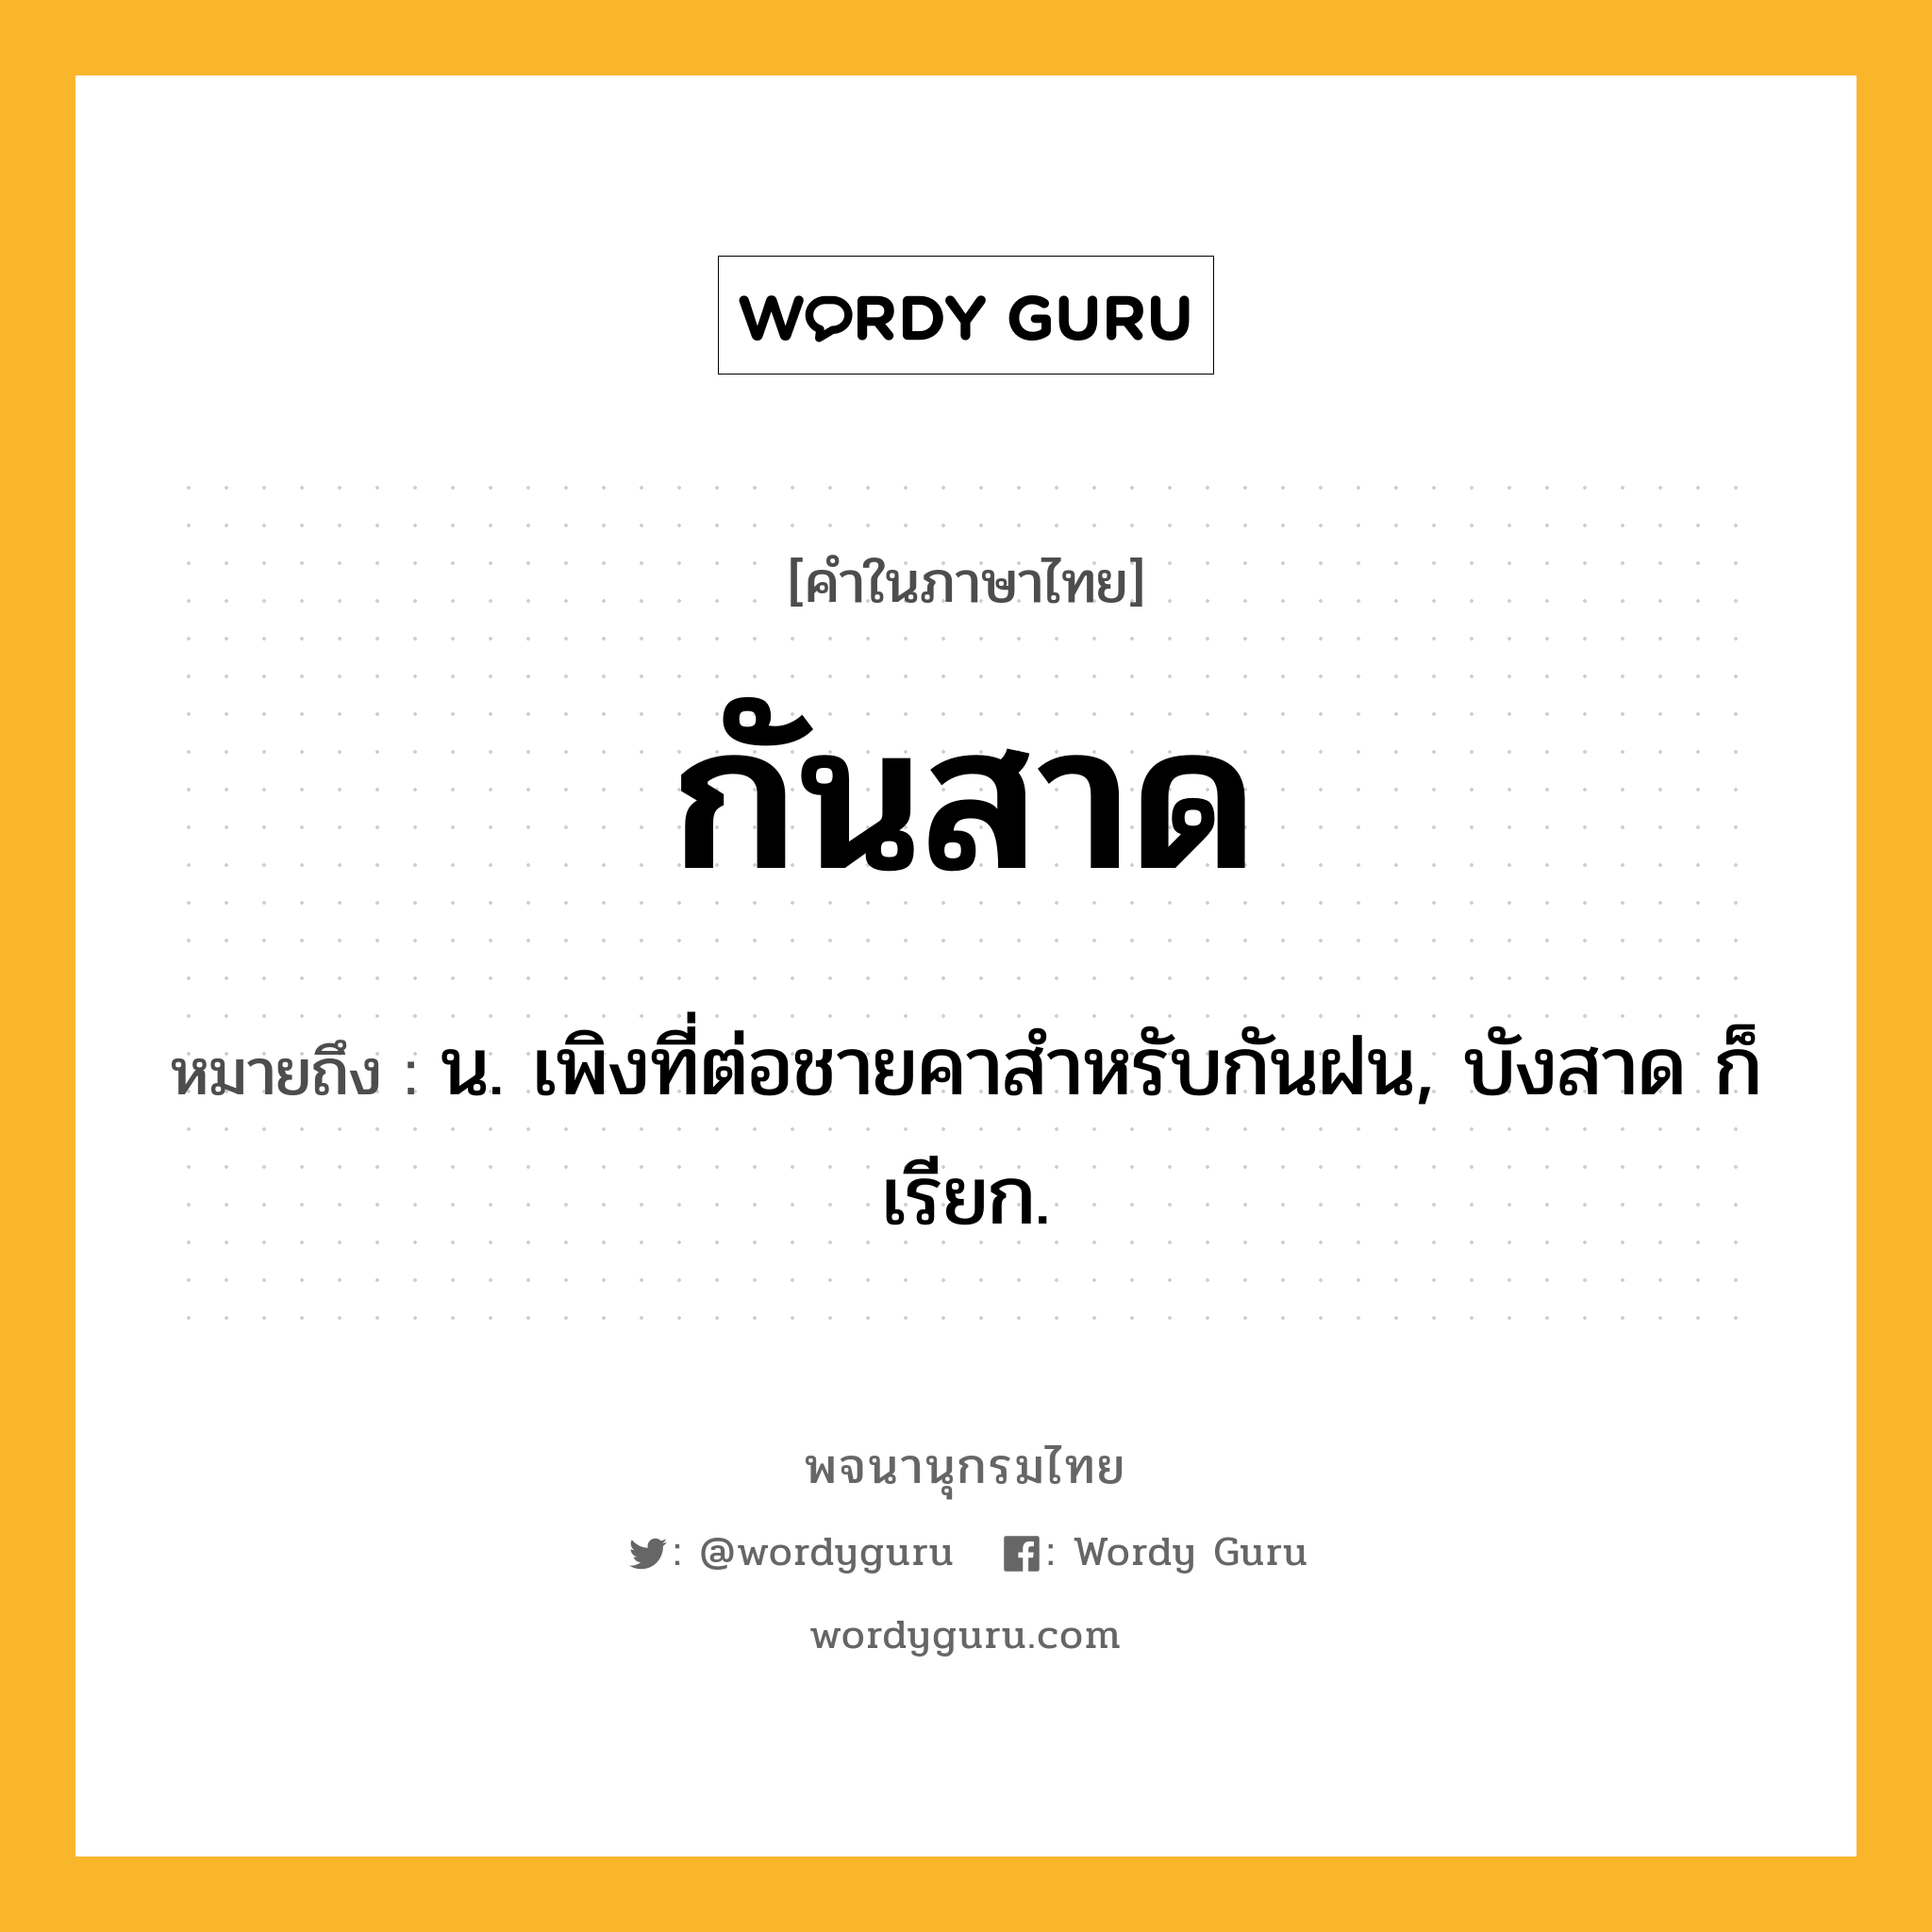 กันสาด ความหมาย หมายถึงอะไร?, คำในภาษาไทย กันสาด หมายถึง น. เพิงที่ต่อชายคาสําหรับกันฝน, บังสาด ก็เรียก.